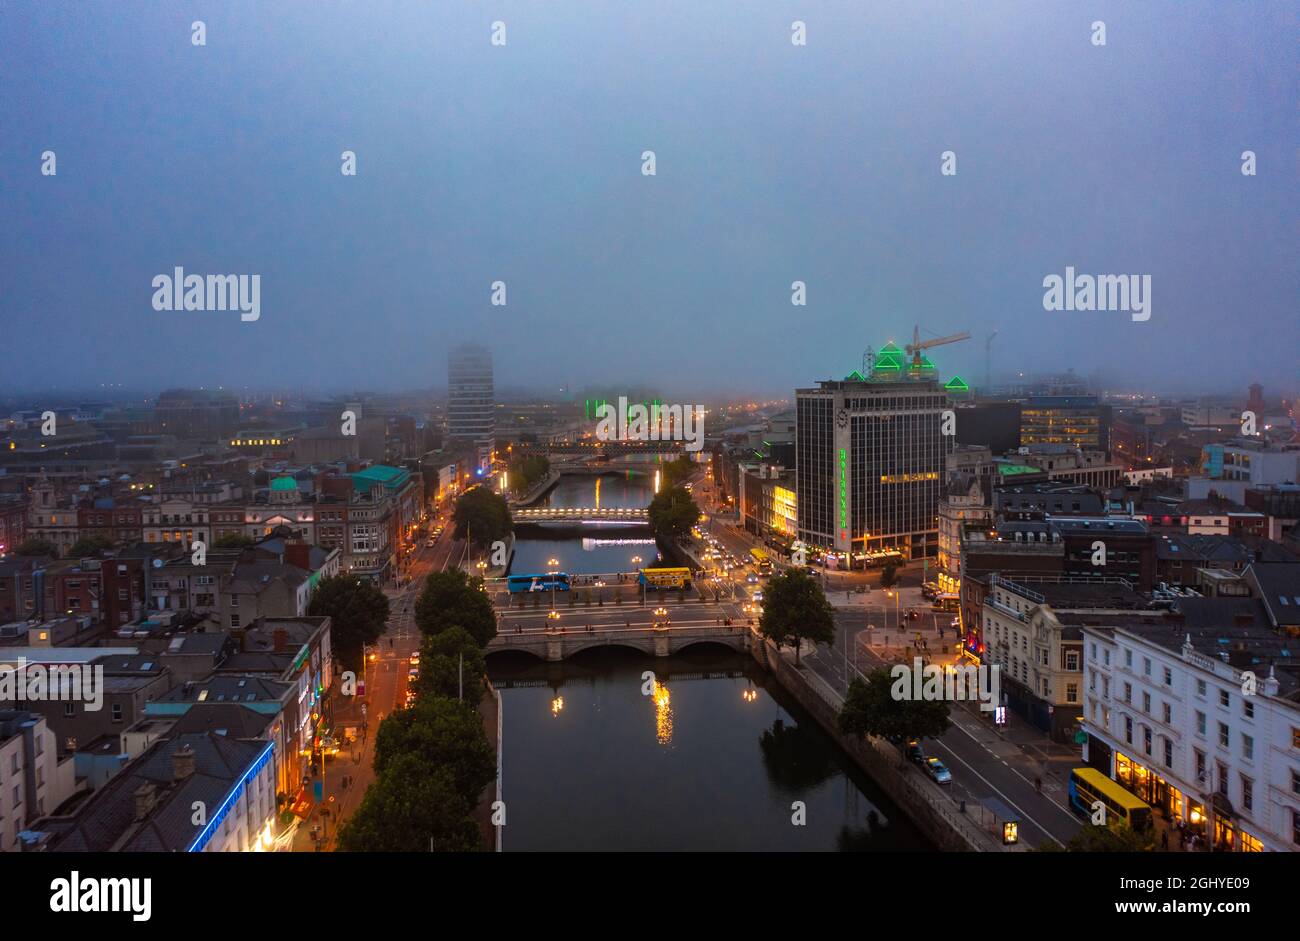 Luftaufnahme von Finanzhochhäusern, die die Zeit auf digitaler Uhr in der Nacht in Mexiko-Stadt unter bewölktem Himmel anzeigen. Stockfoto